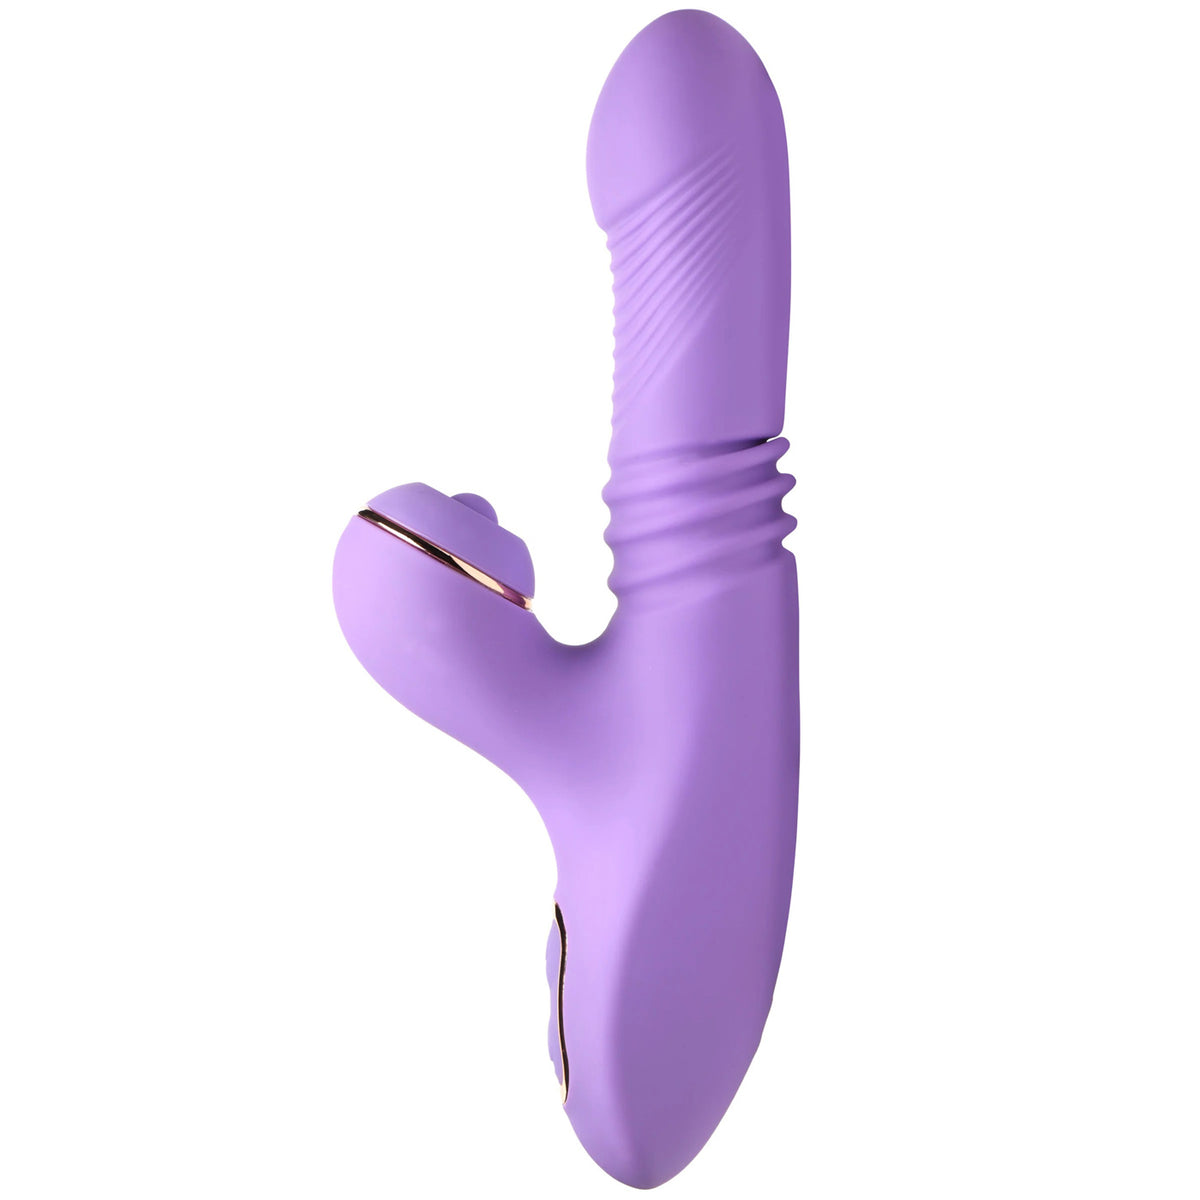 Conejo de silicona de empuje y pulsación Pro-Thrust Max 14x - Púrpura